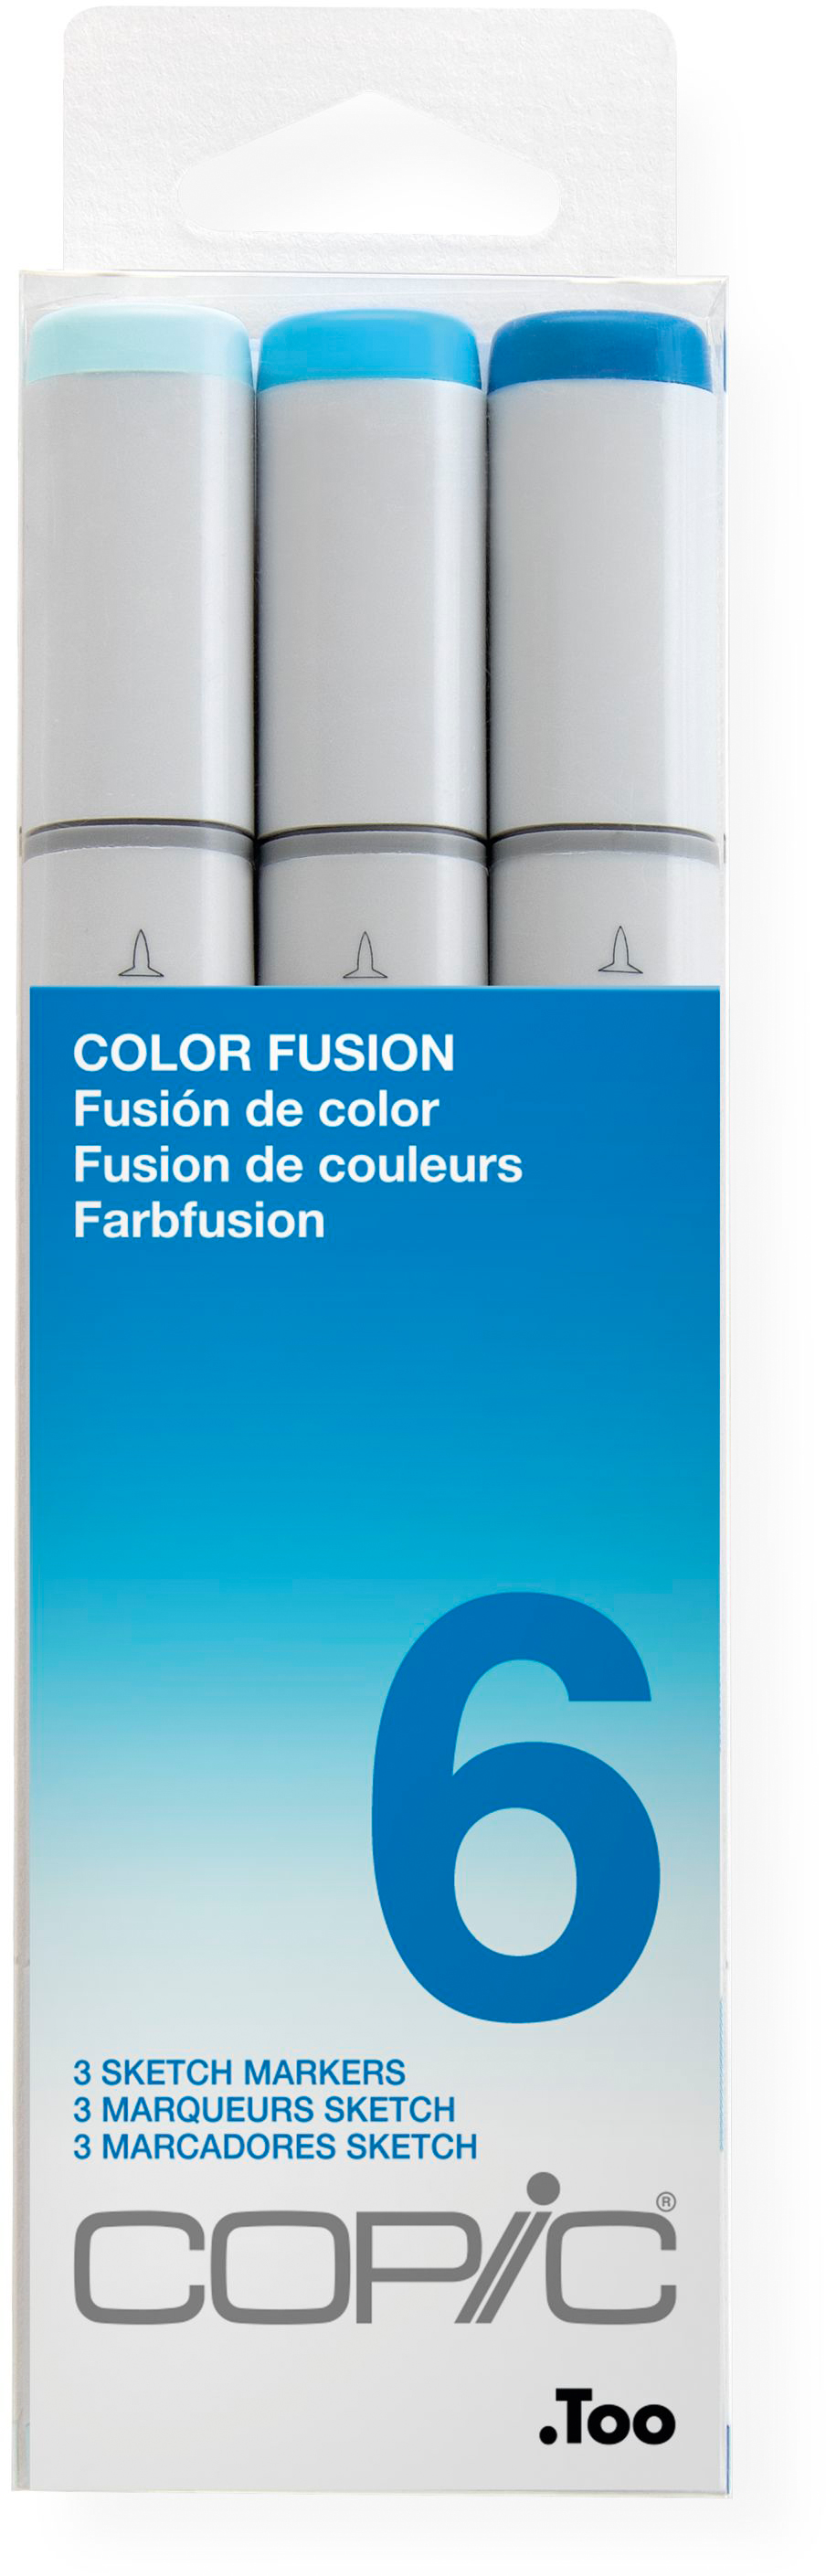 COPIC Marker Sketch 21075656 Set Color Fusion 6, 3 pcs.